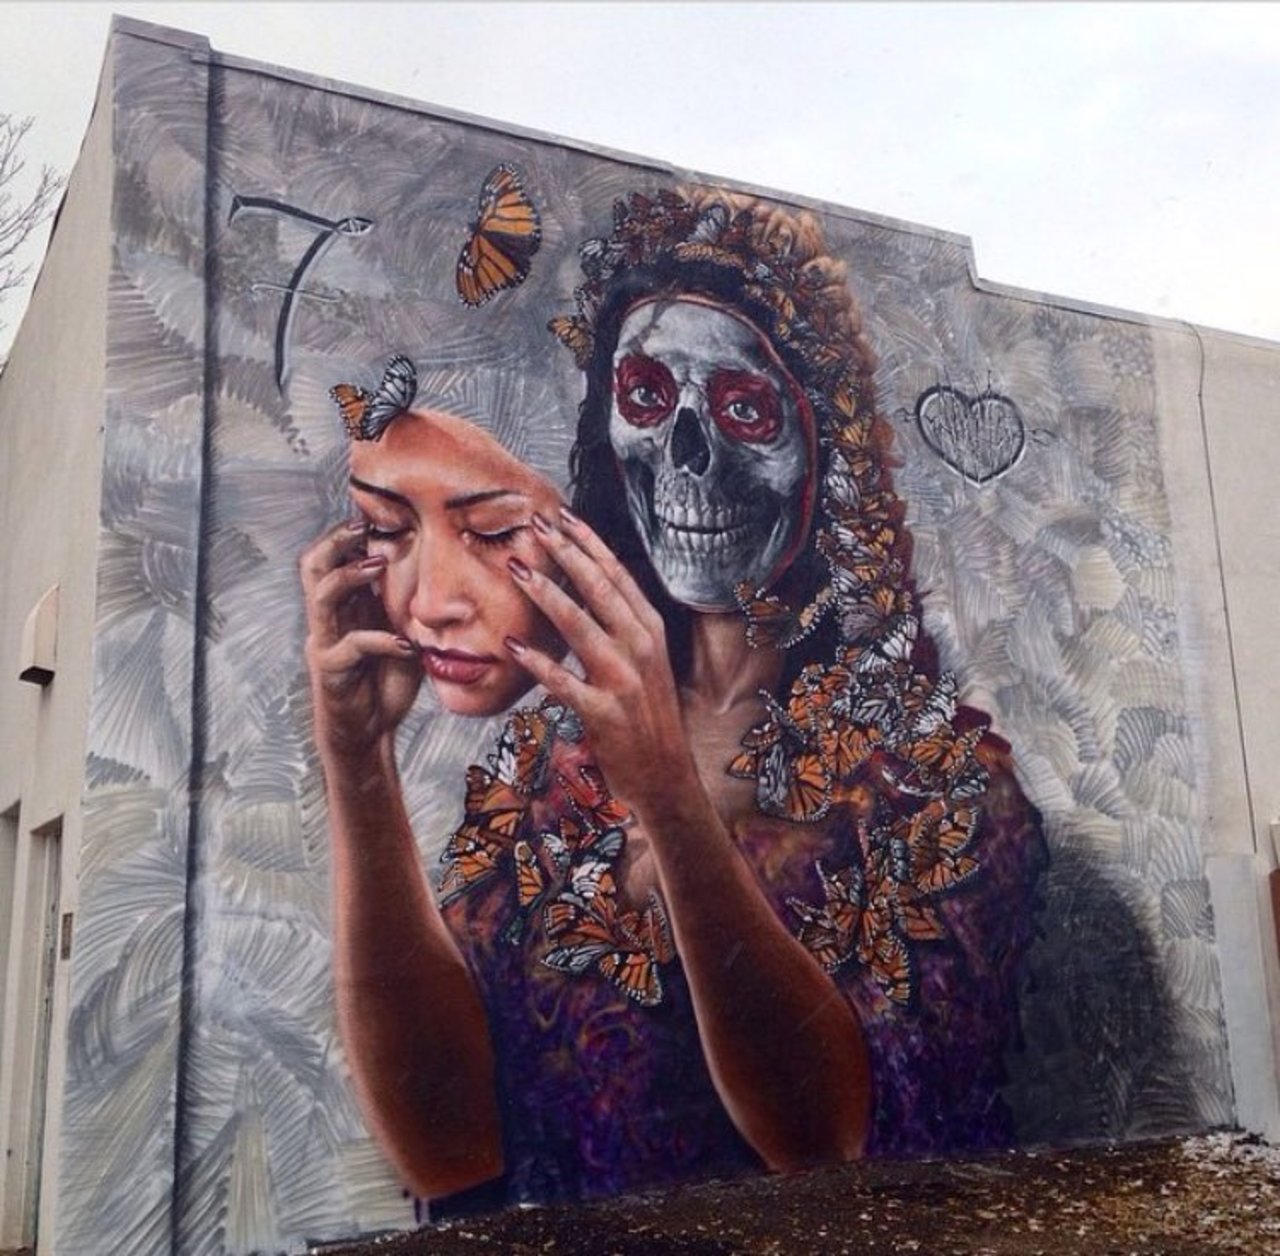 New mural by Gamma Gallery in Denver, CO #streetart #mural #graffiti #art https://t.co/rbYg6z3I9j